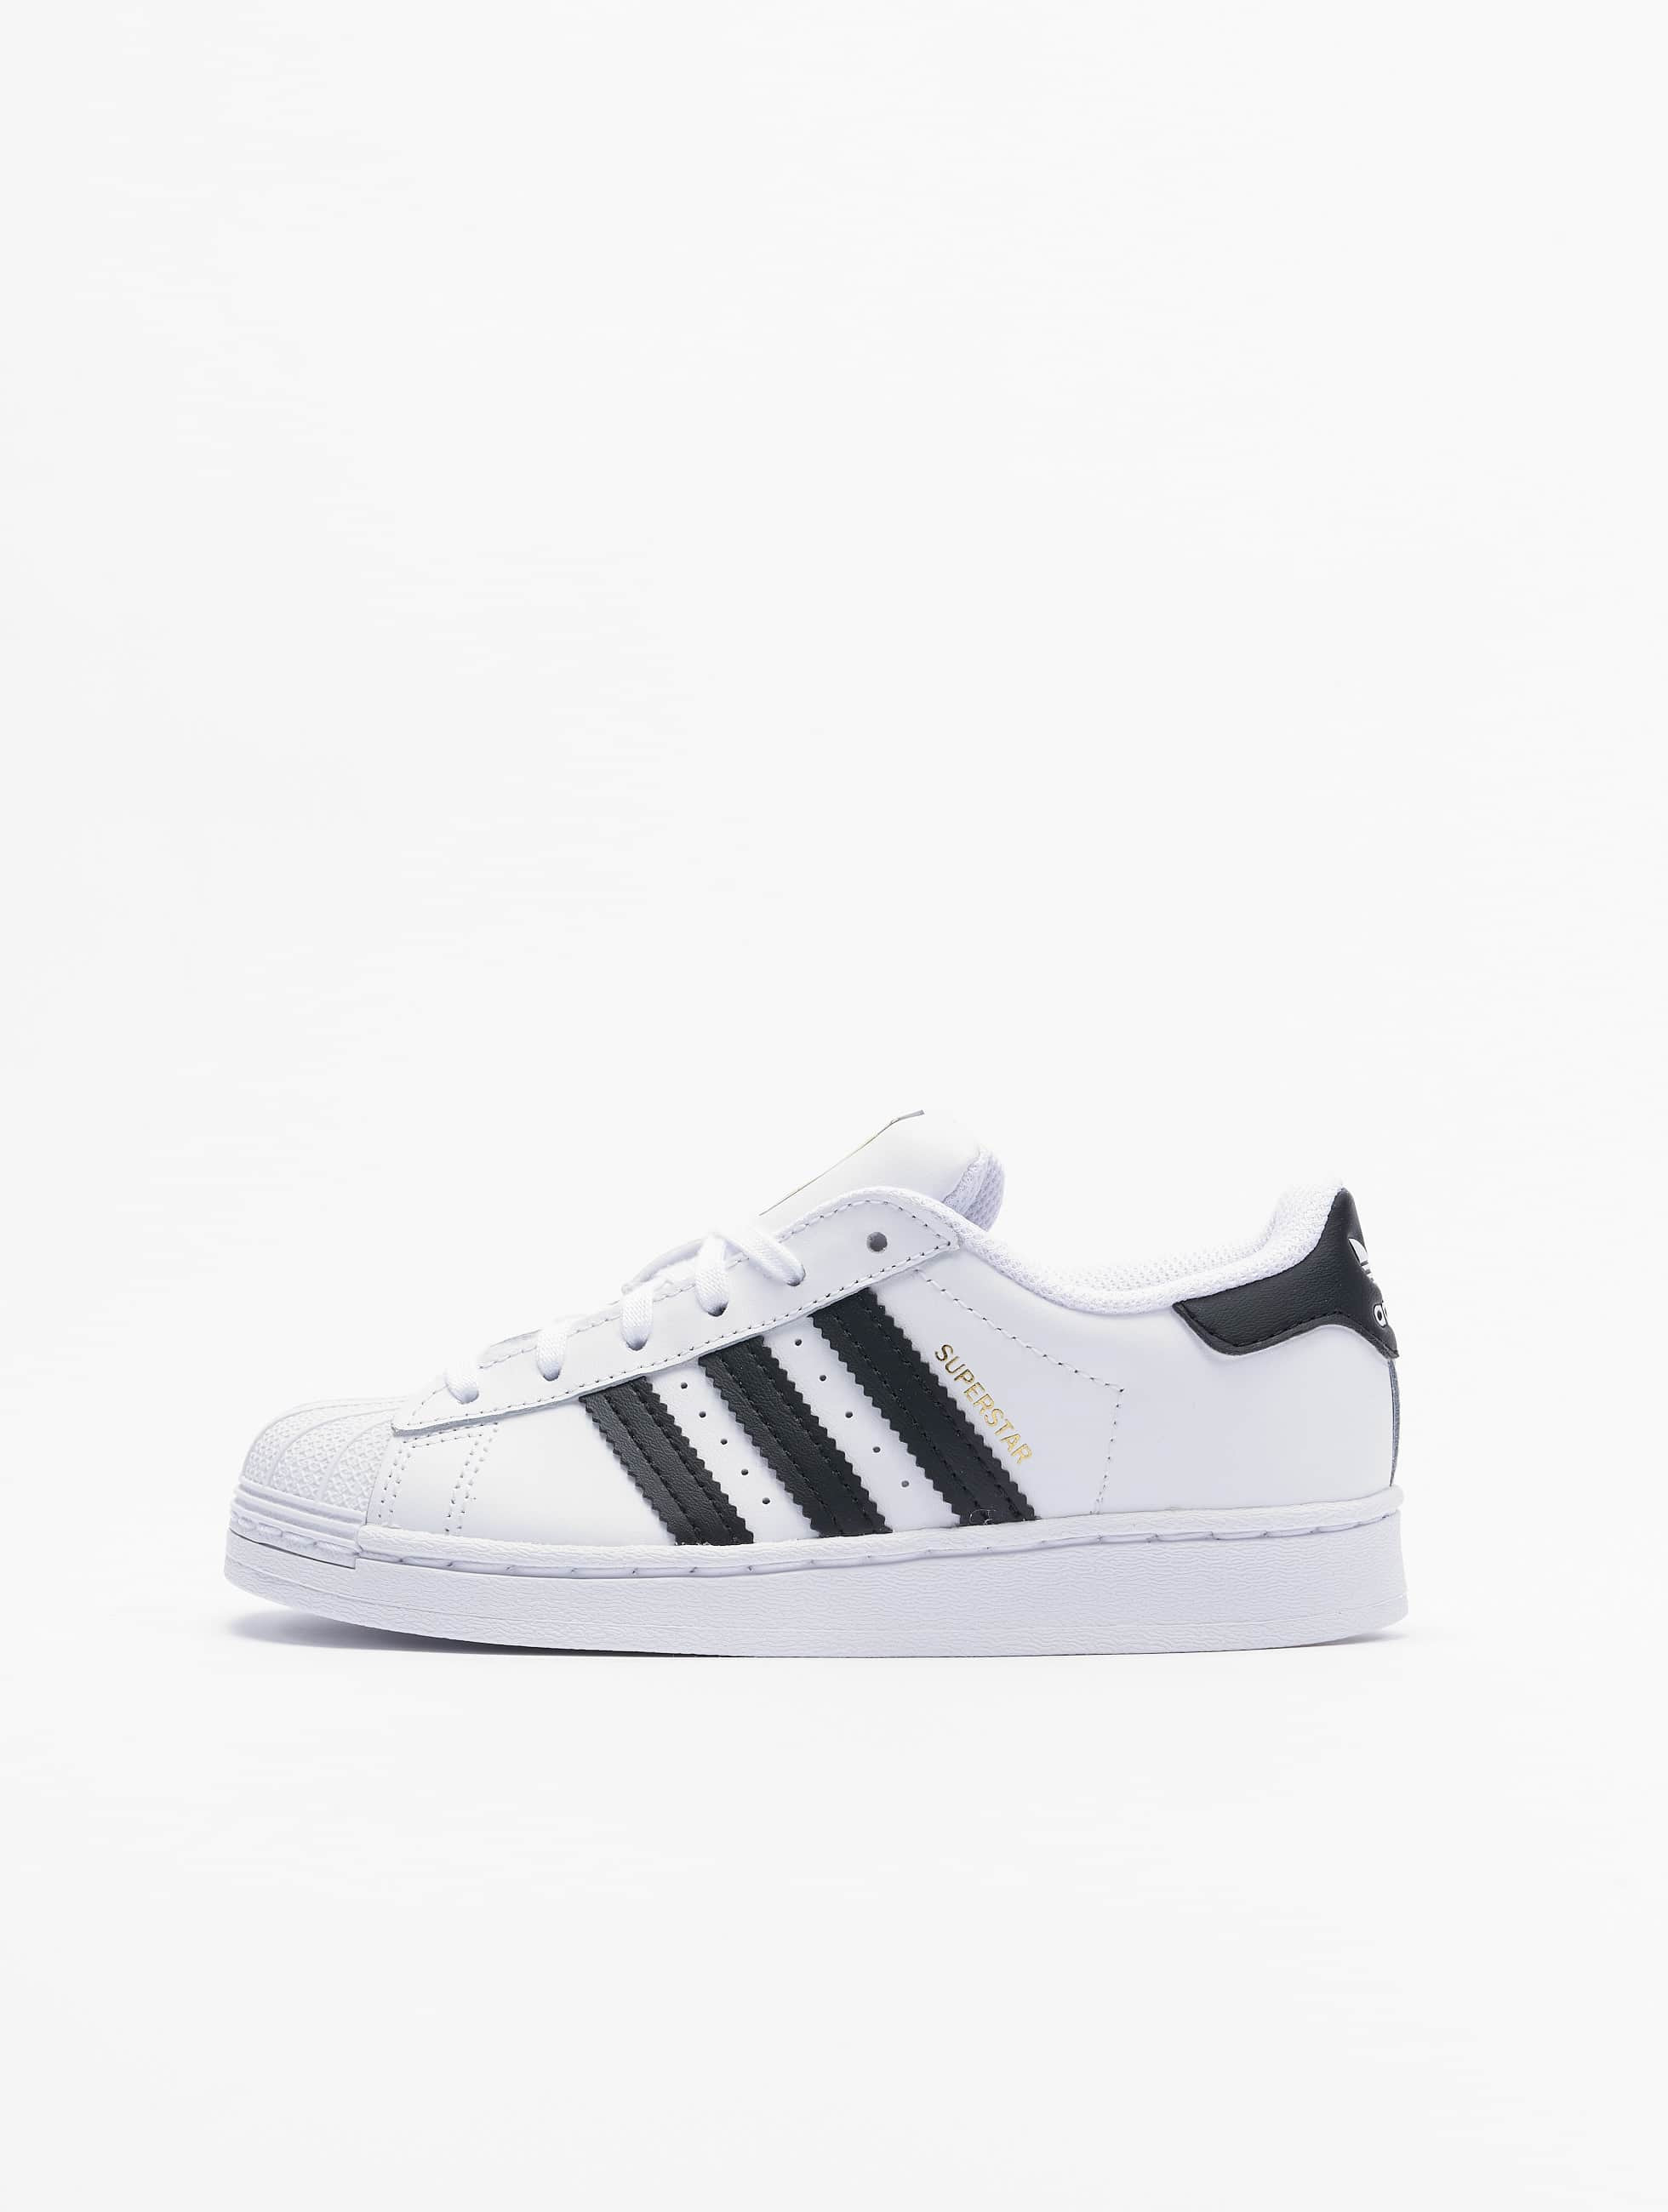 Mangle Solformørkelse medier adidas Originals Sko / Sneakers Superstar C i hvid 837729